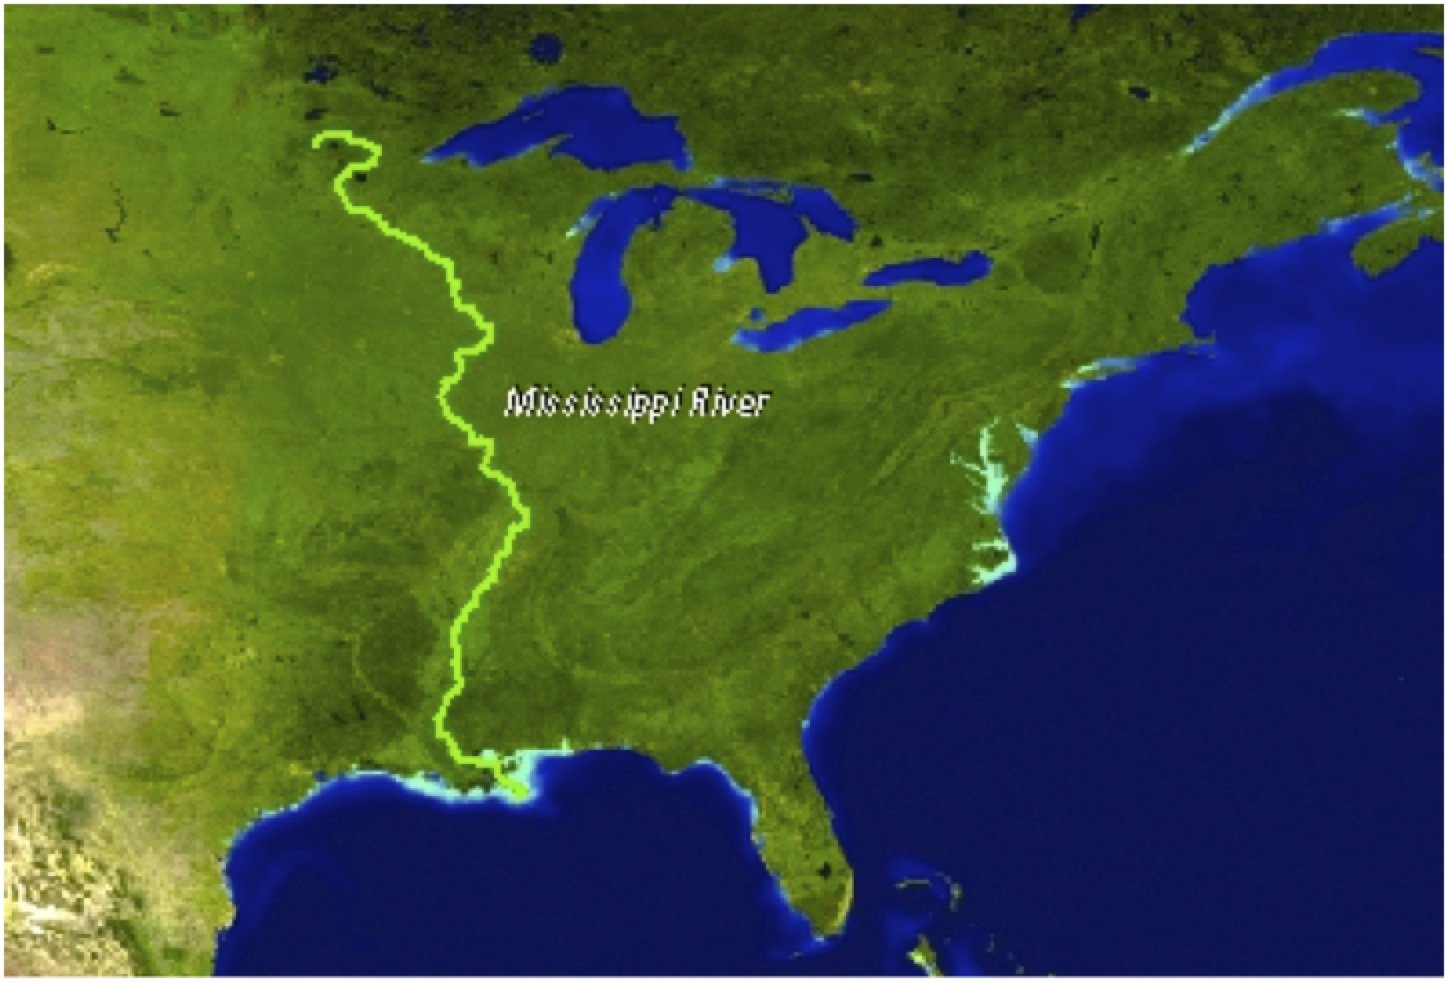 Левый приток реки миссисипи. Река Миссисипи на карте. Исток реки Миссисипи. Северная Америка река Миссисипи. Исток реки Миссисипи в Северной Америке.